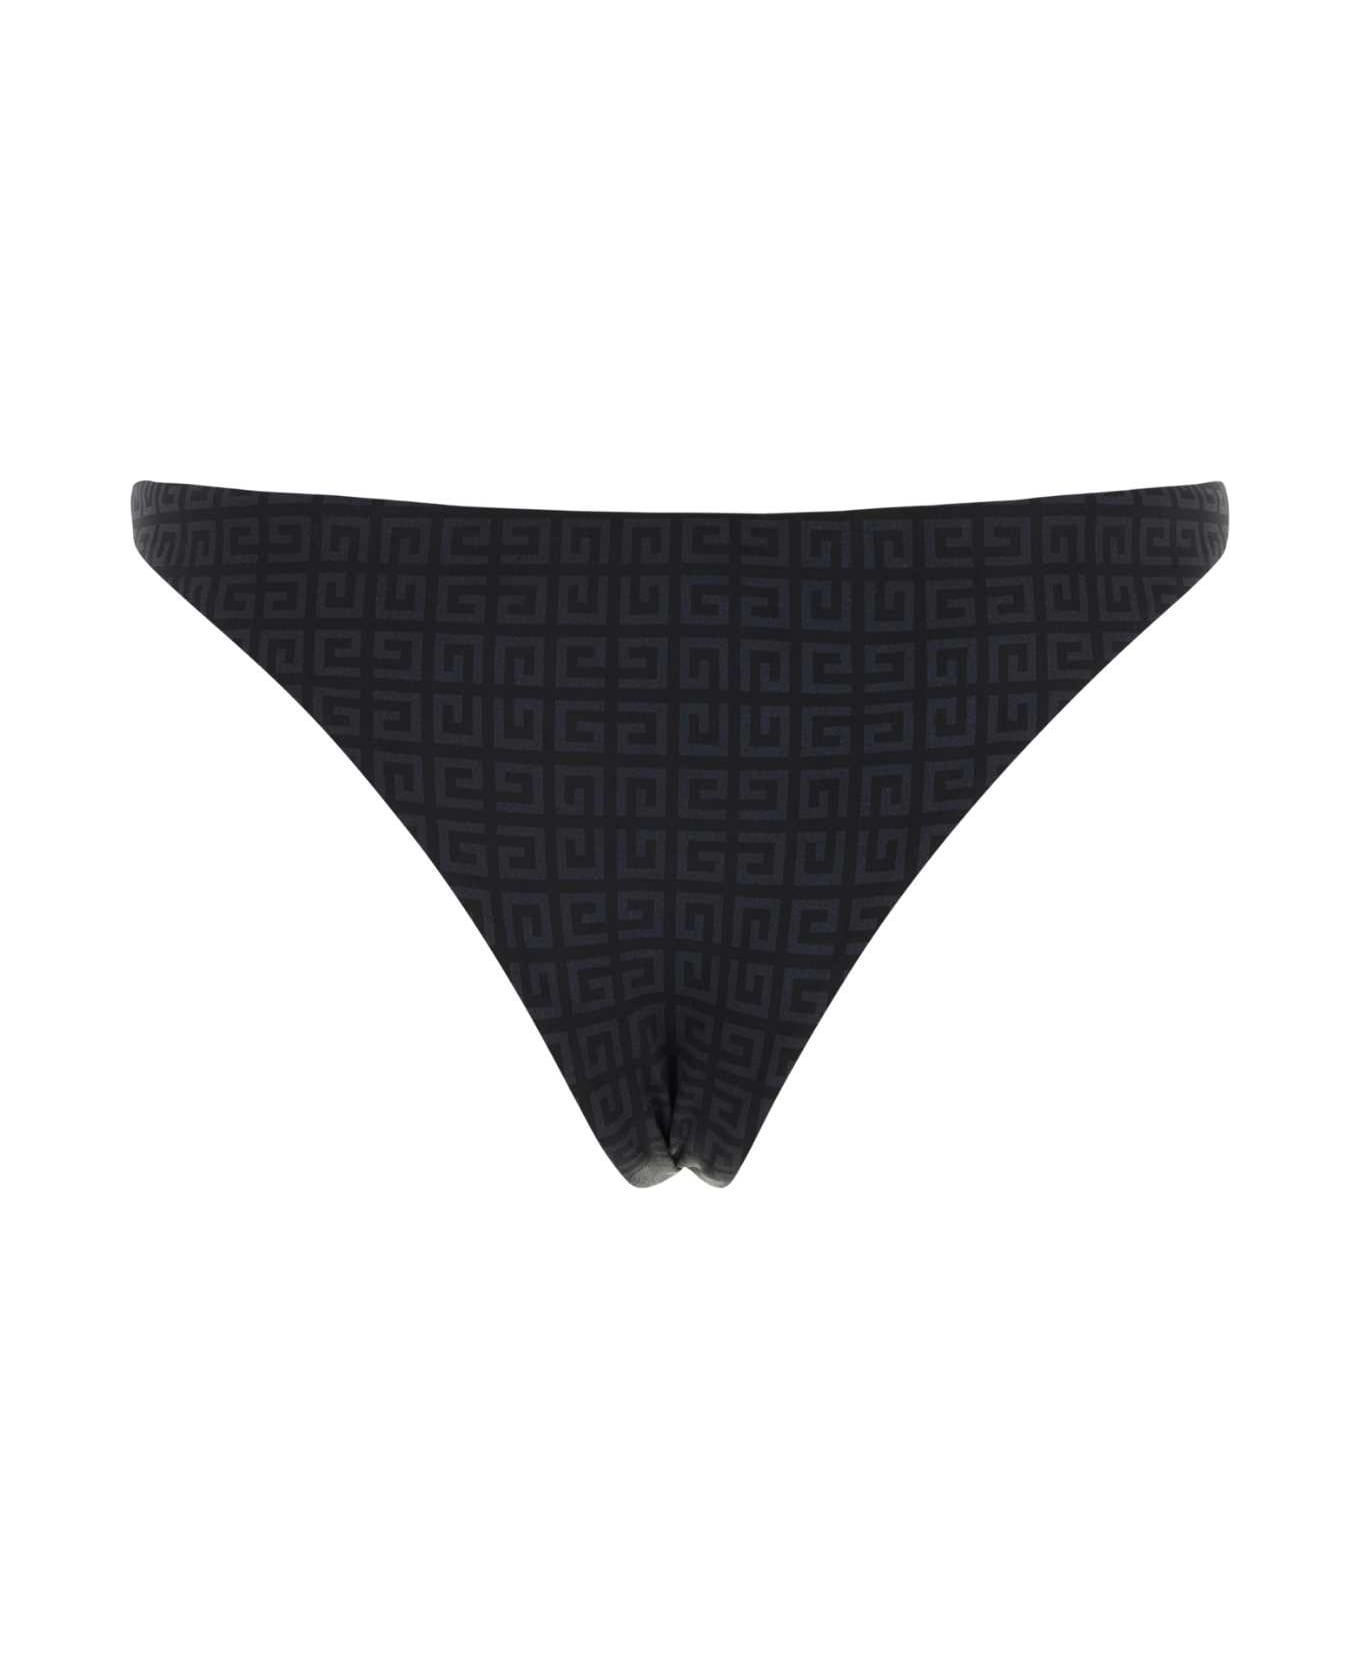 Givenchy Printed Stretch Nylon Bikini Bottom - BLACKGREY